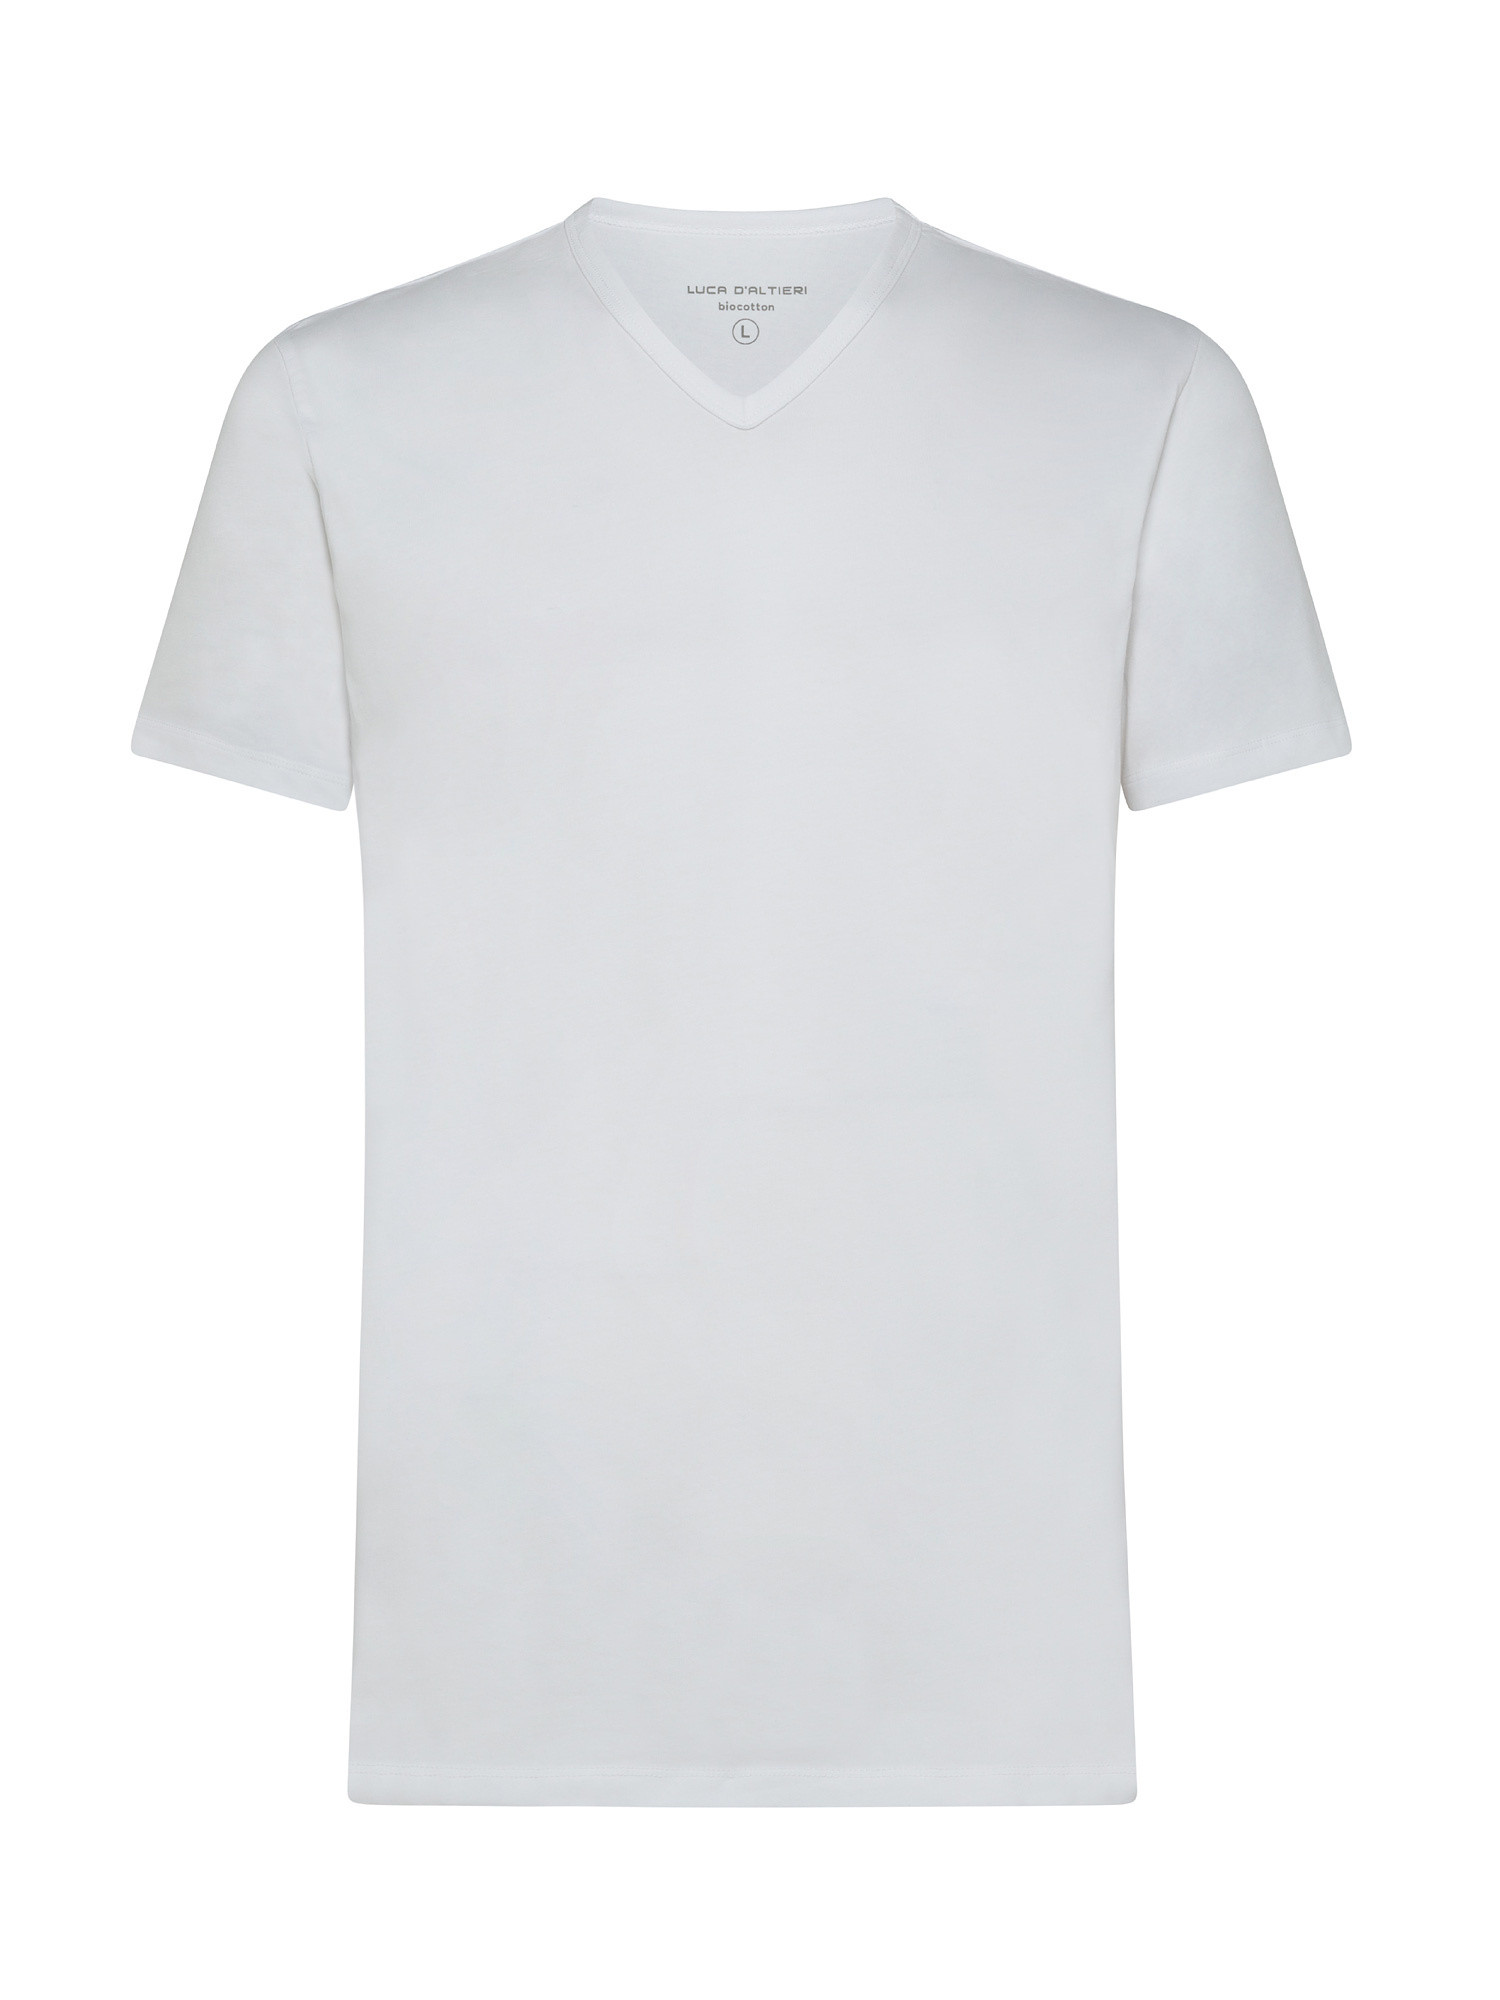 Set da 2 t-shirt, Bianco, large